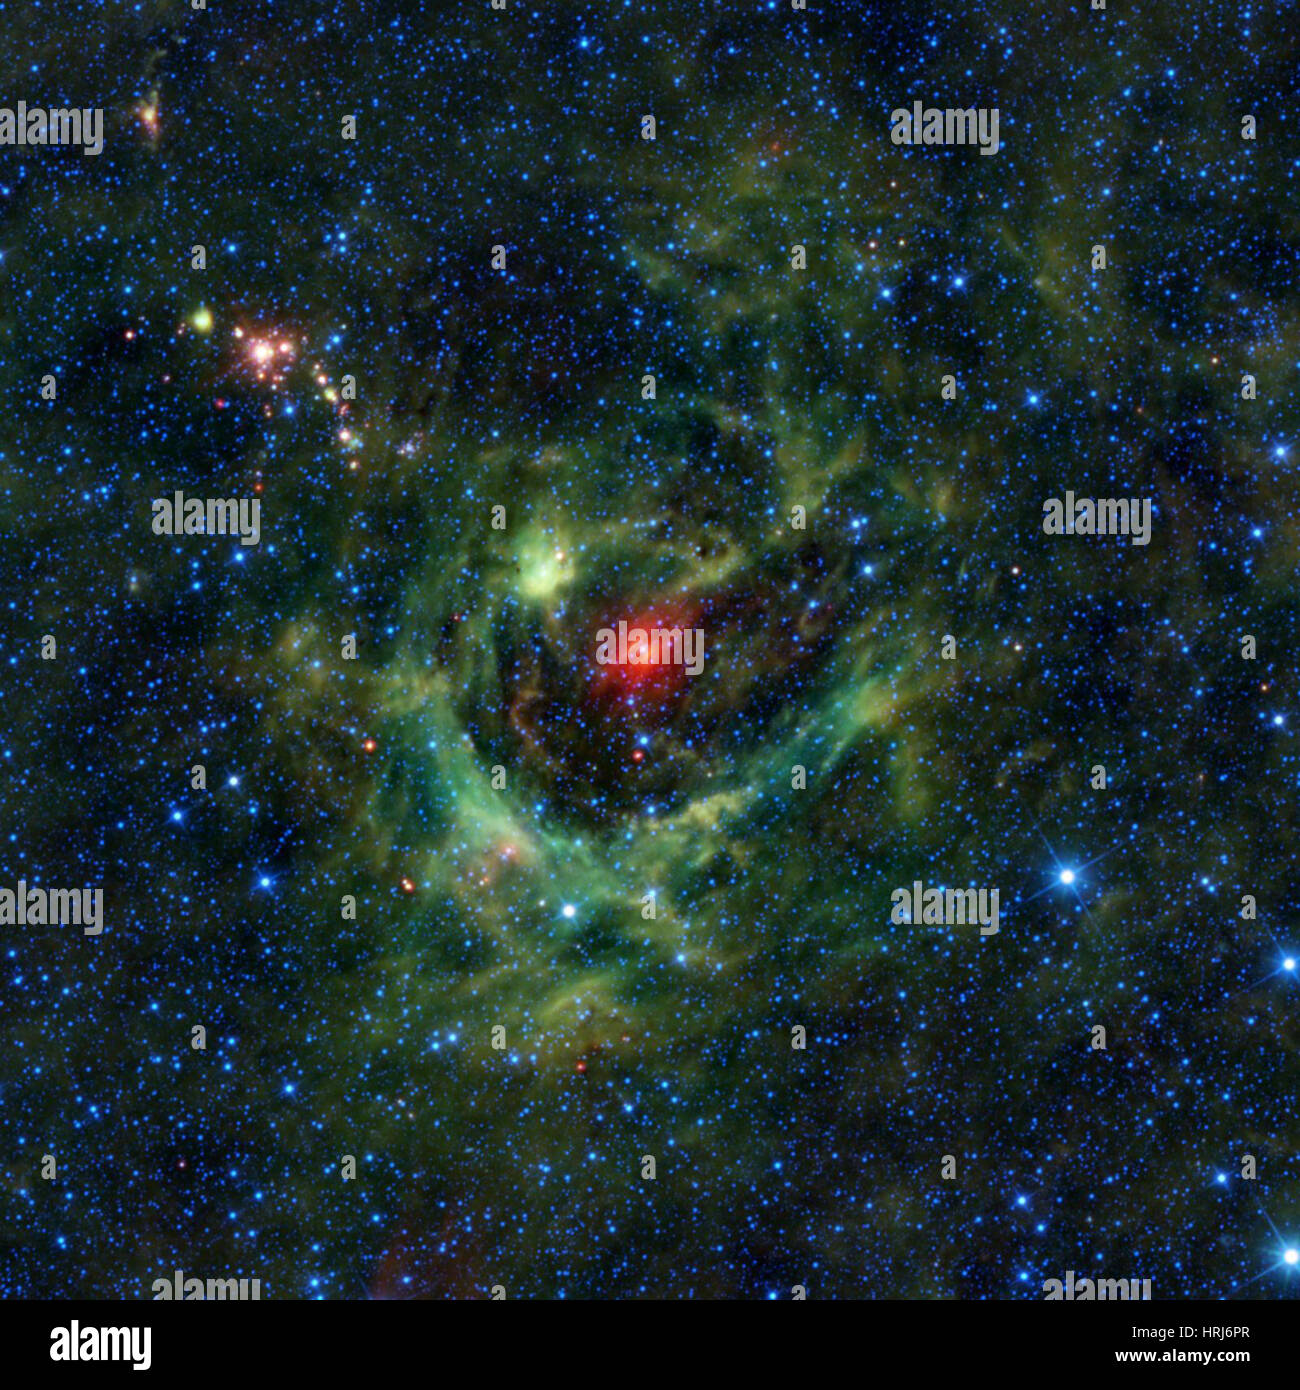 LBN 149.02-00.13, Sh2-205, un vivaio stellare Foto Stock